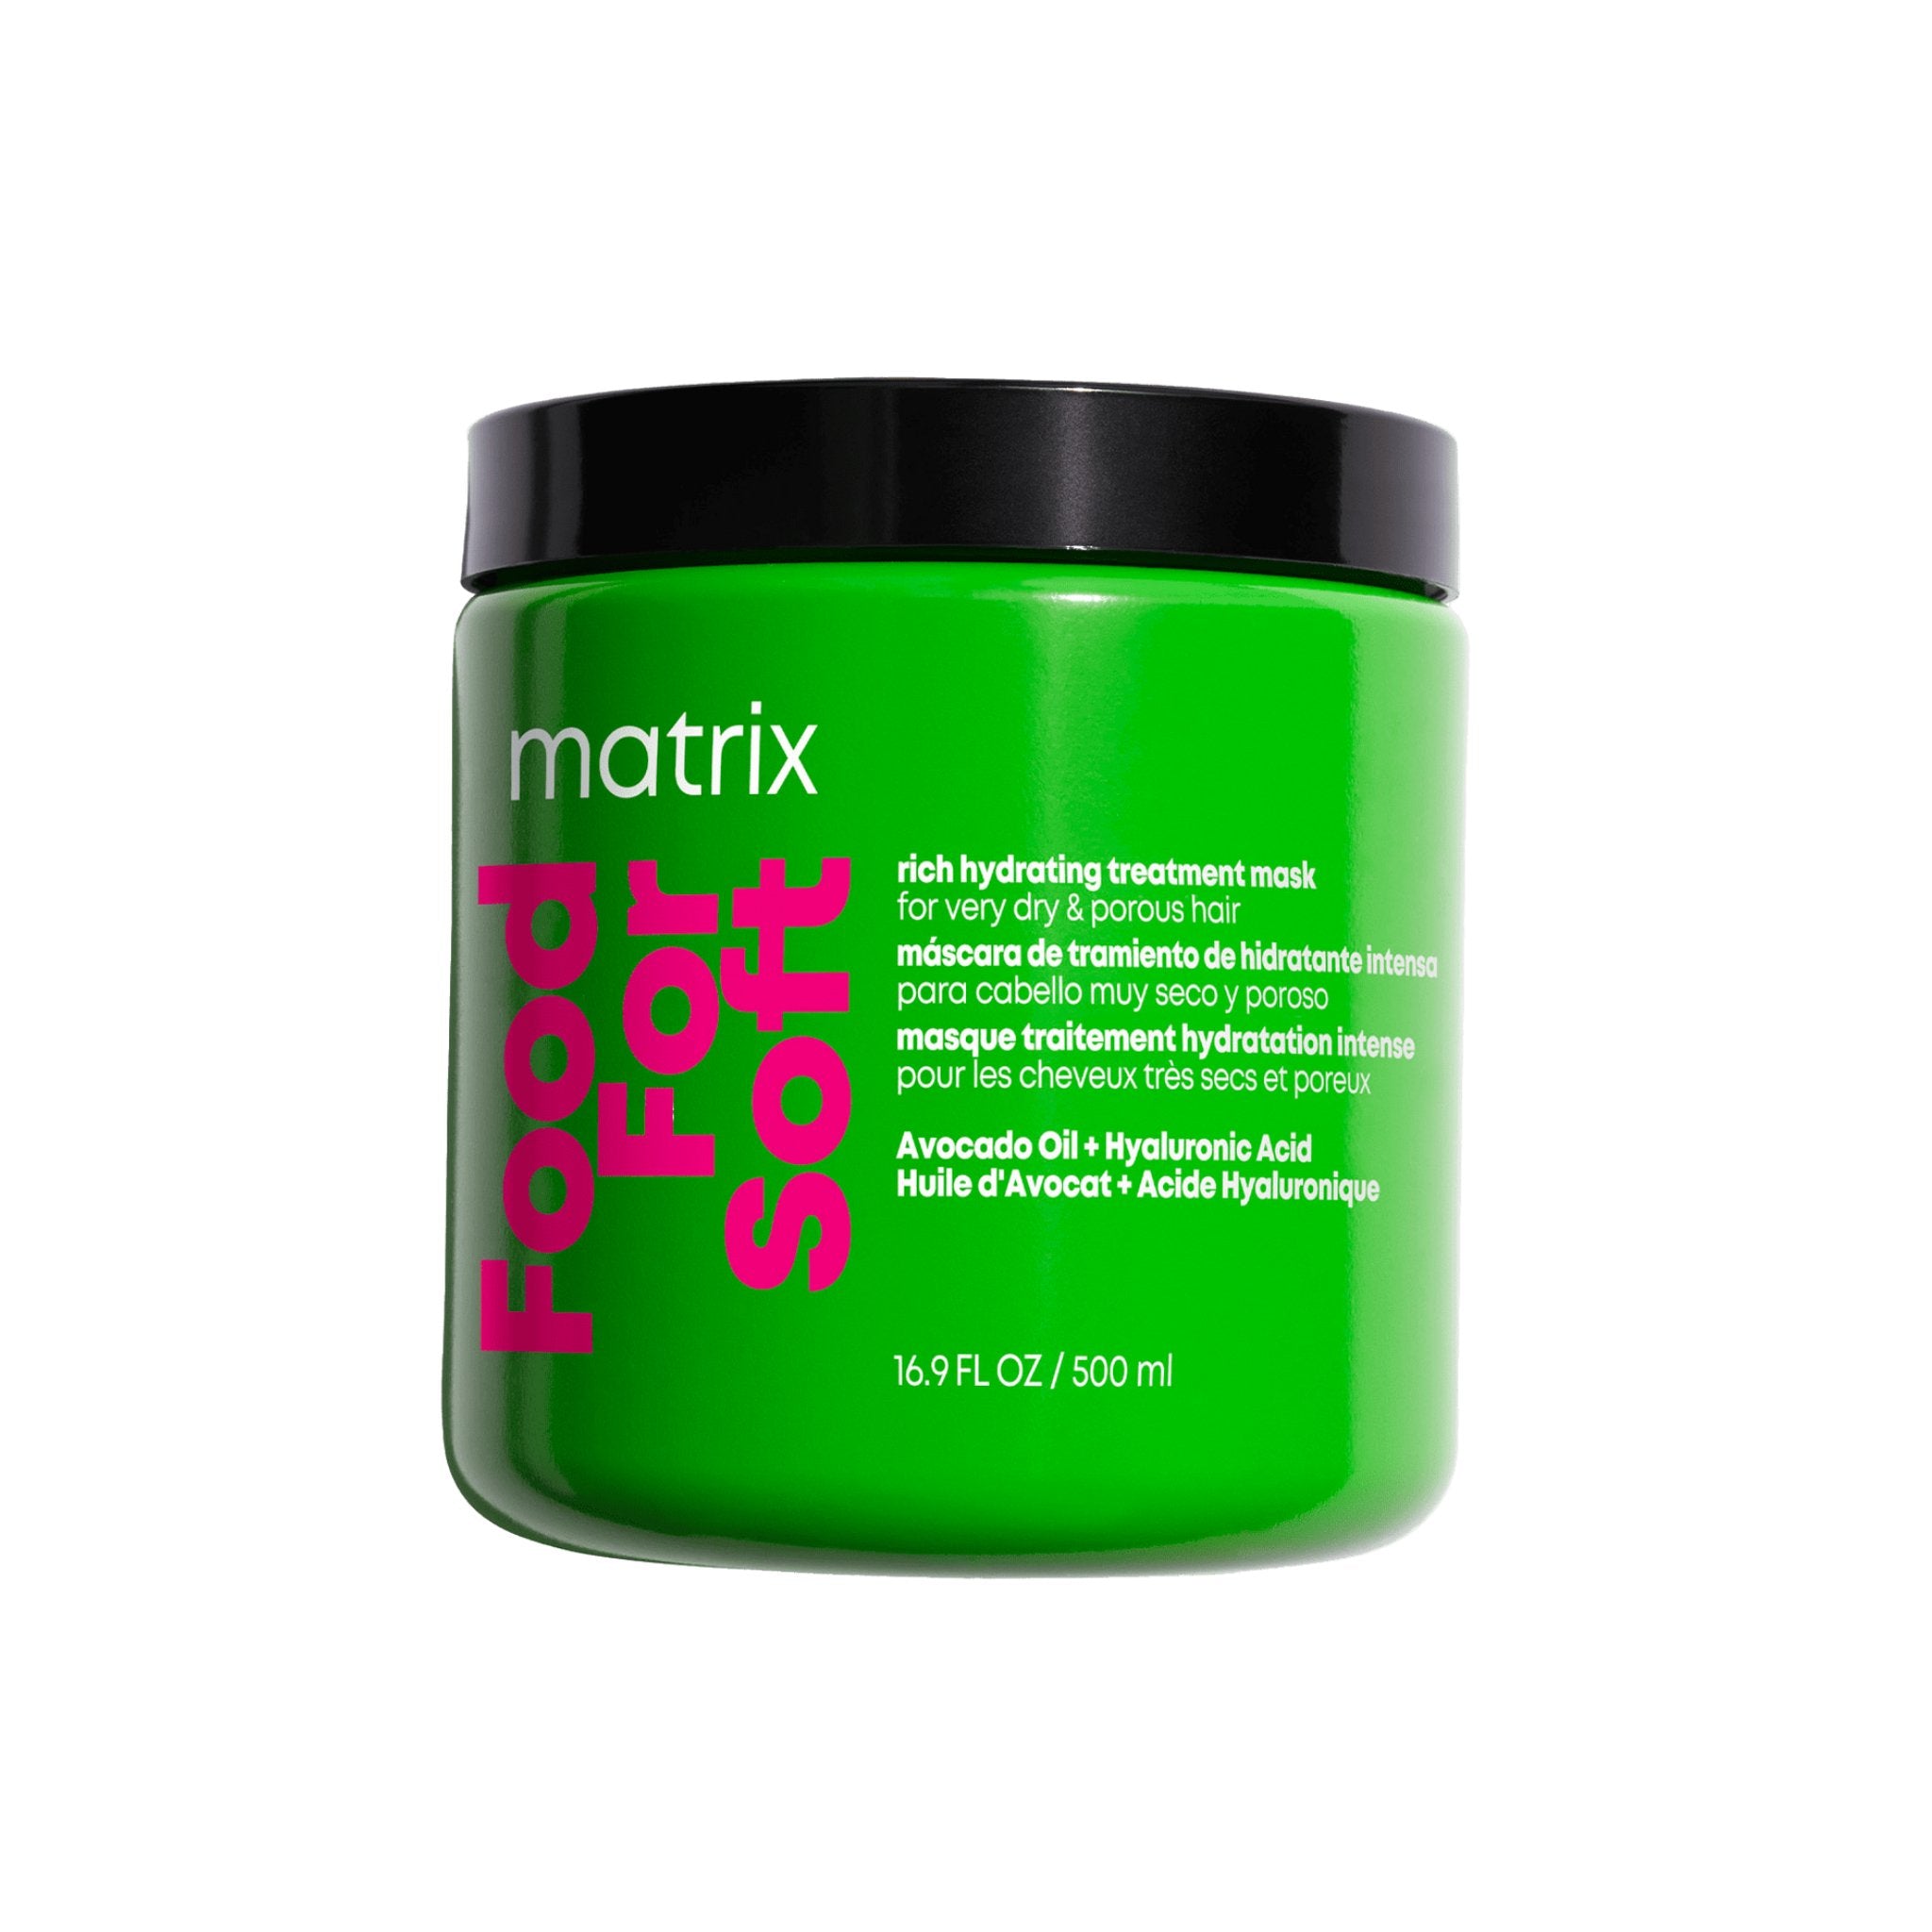 Matrix. Masque Traitement Hydratation Intense Food For Soft - 500 ml - Concept C. Shop